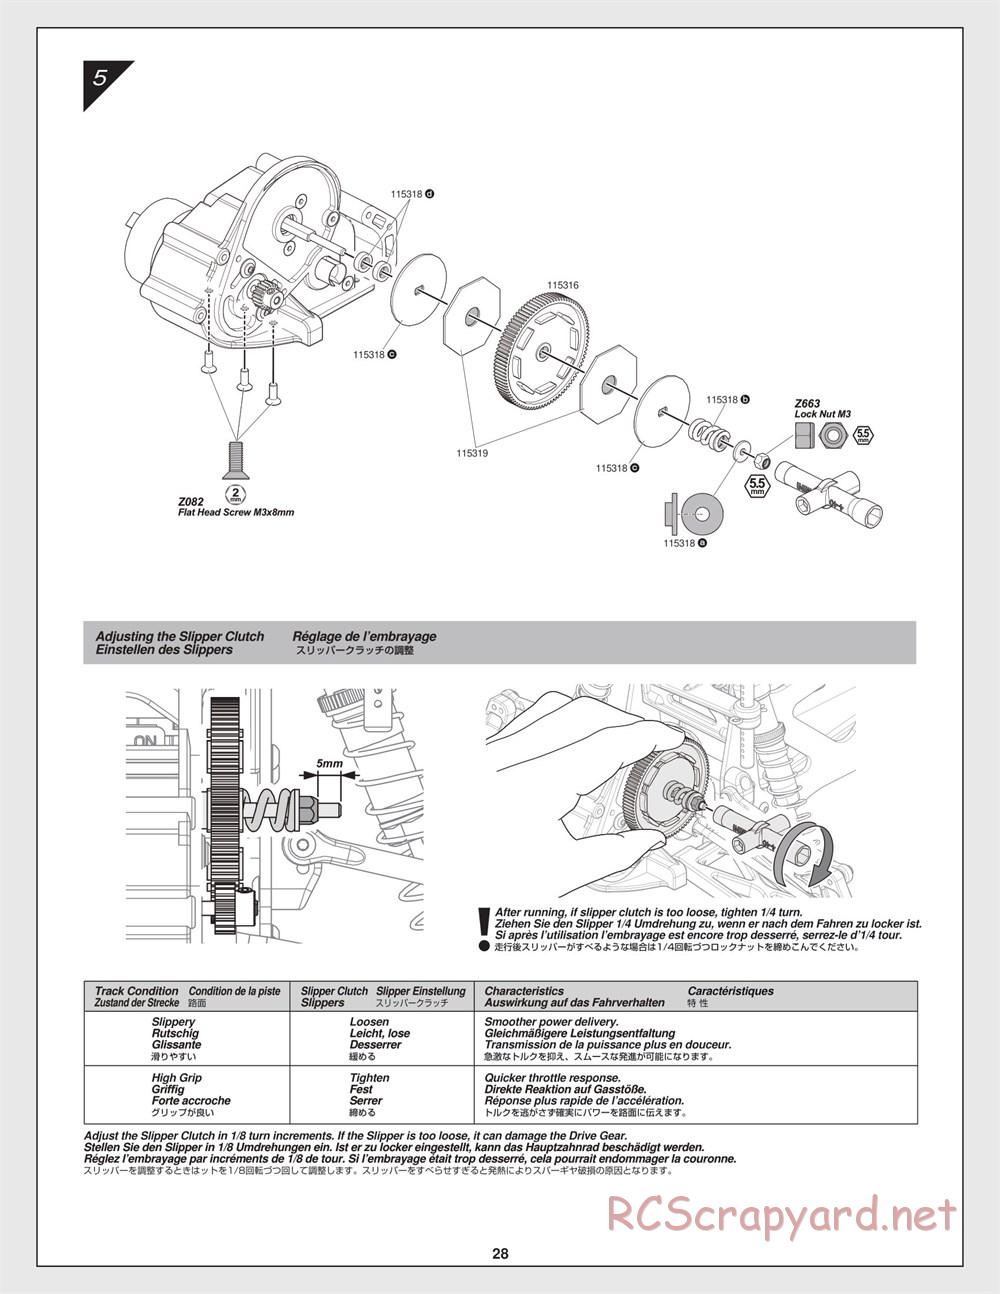 HPI - Jumpshot SC - Manual - Page 28